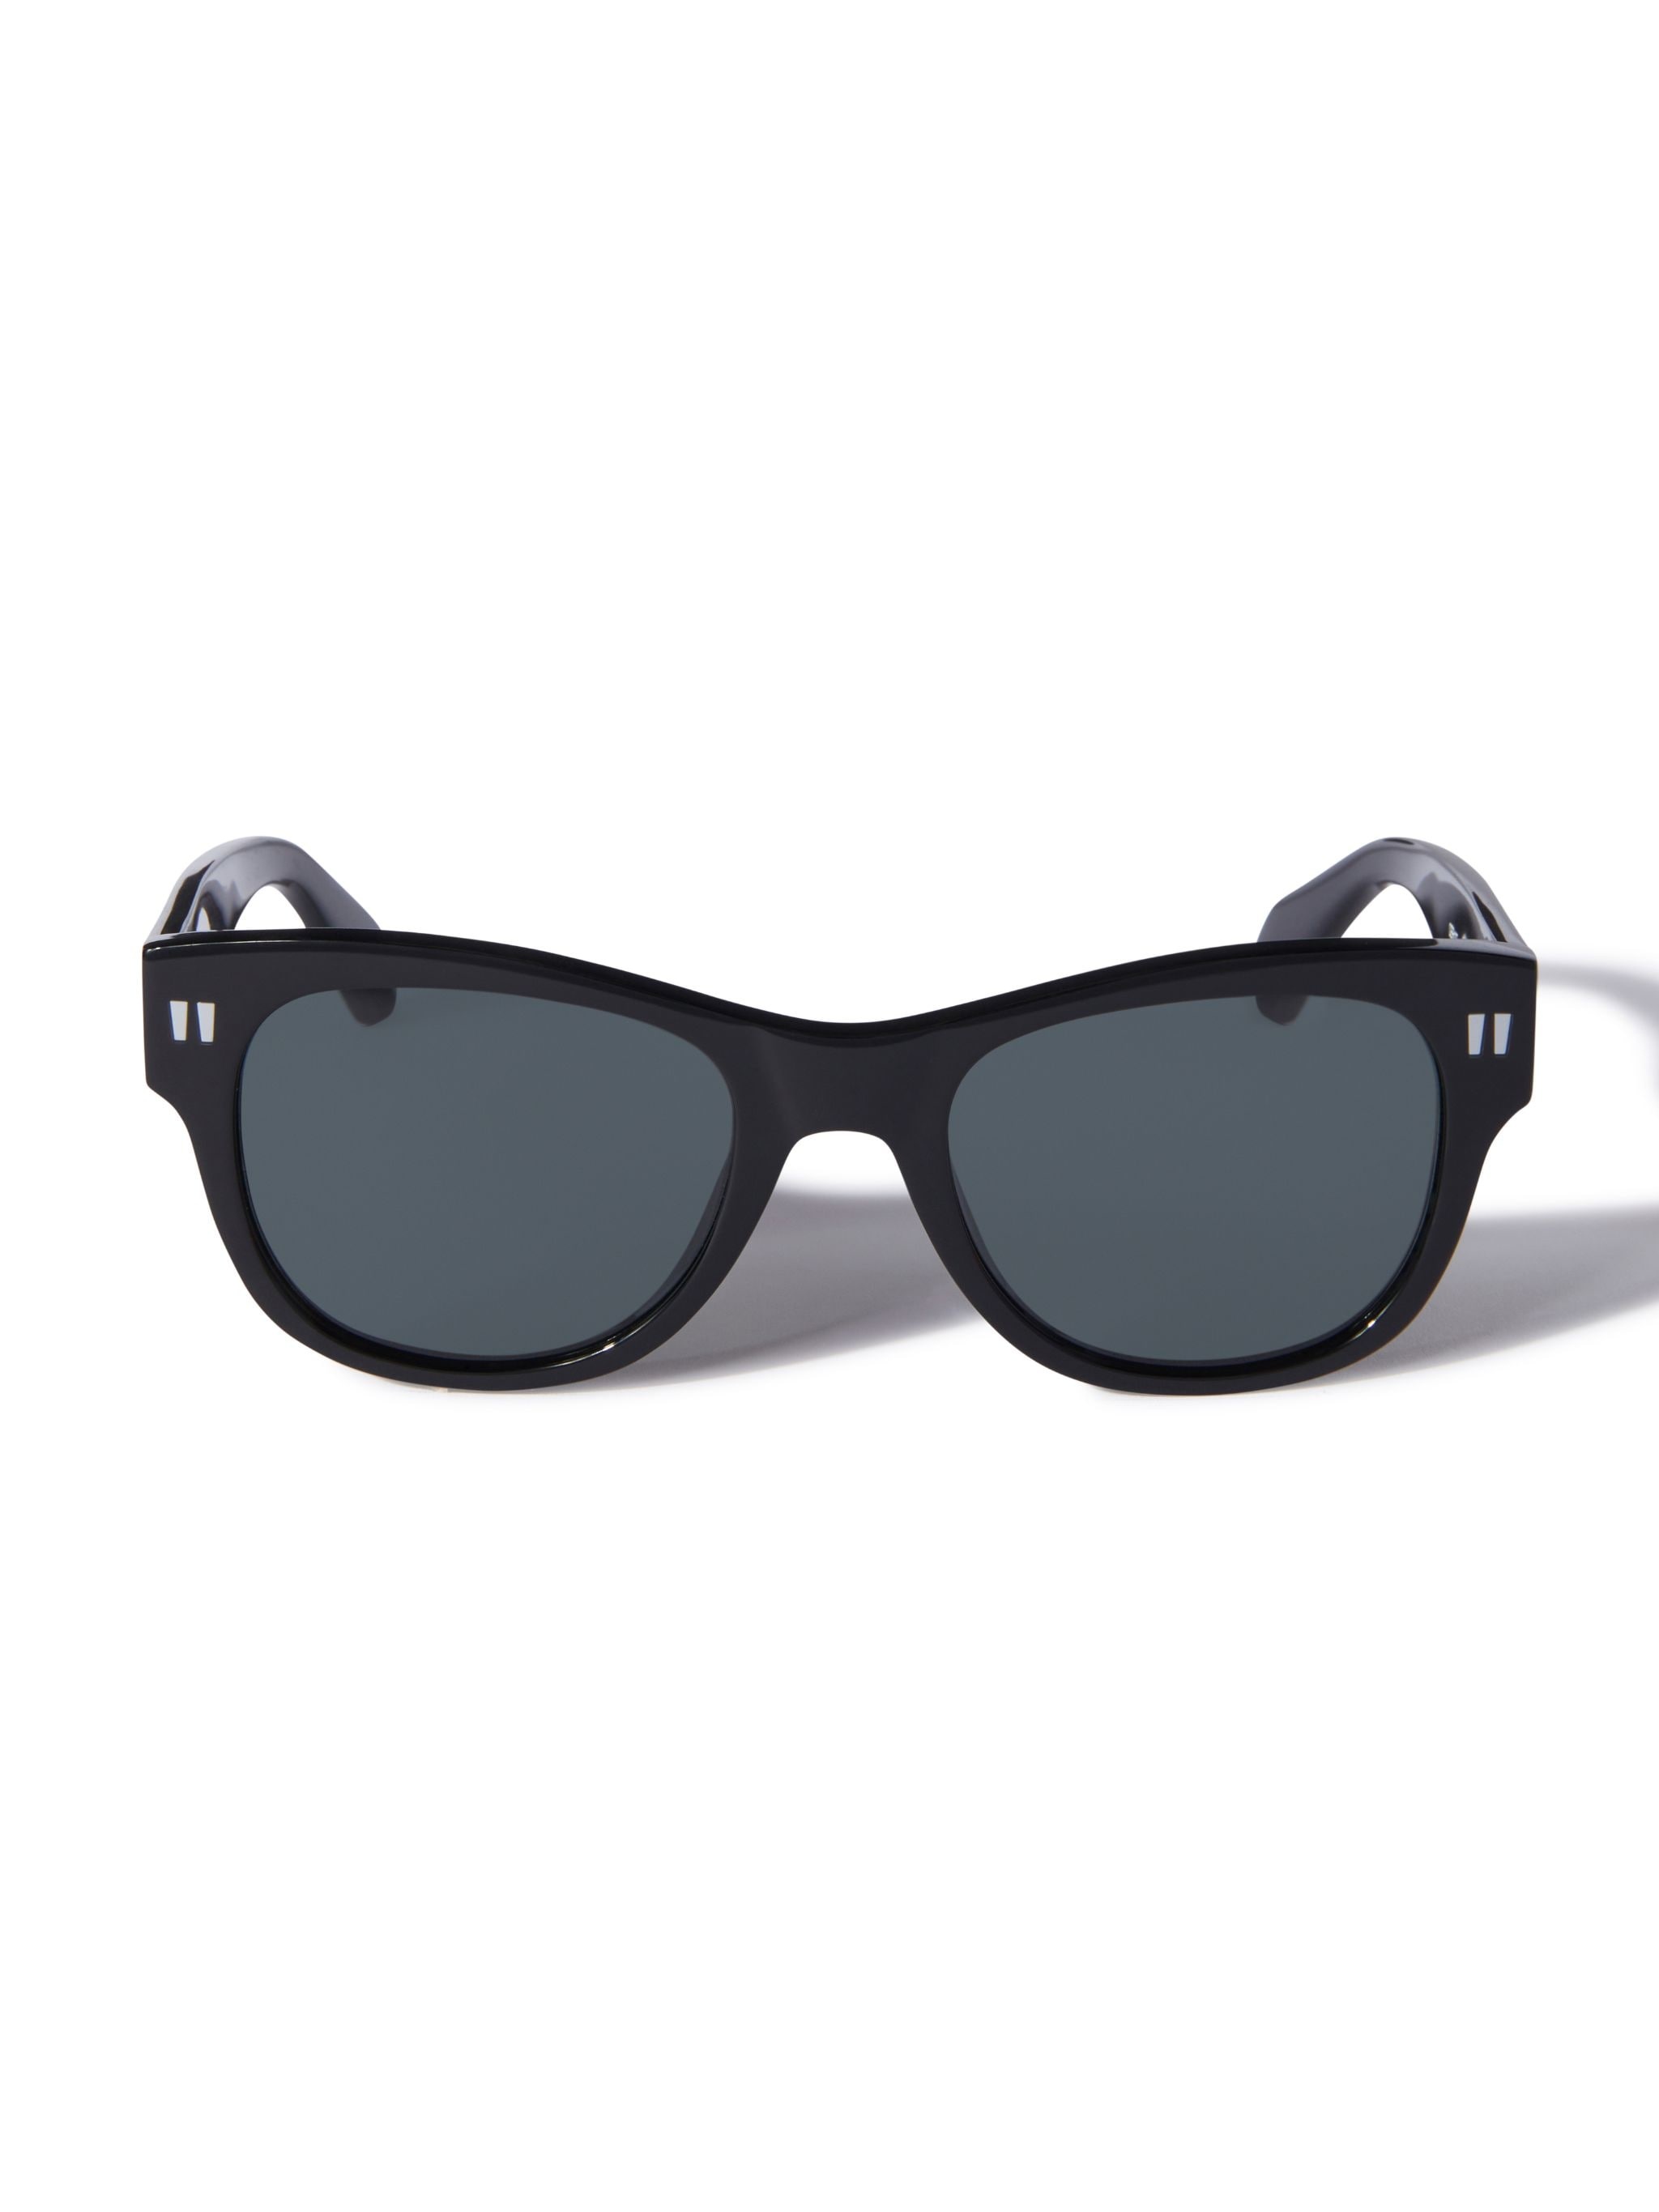 Moab Sunglasses - 1